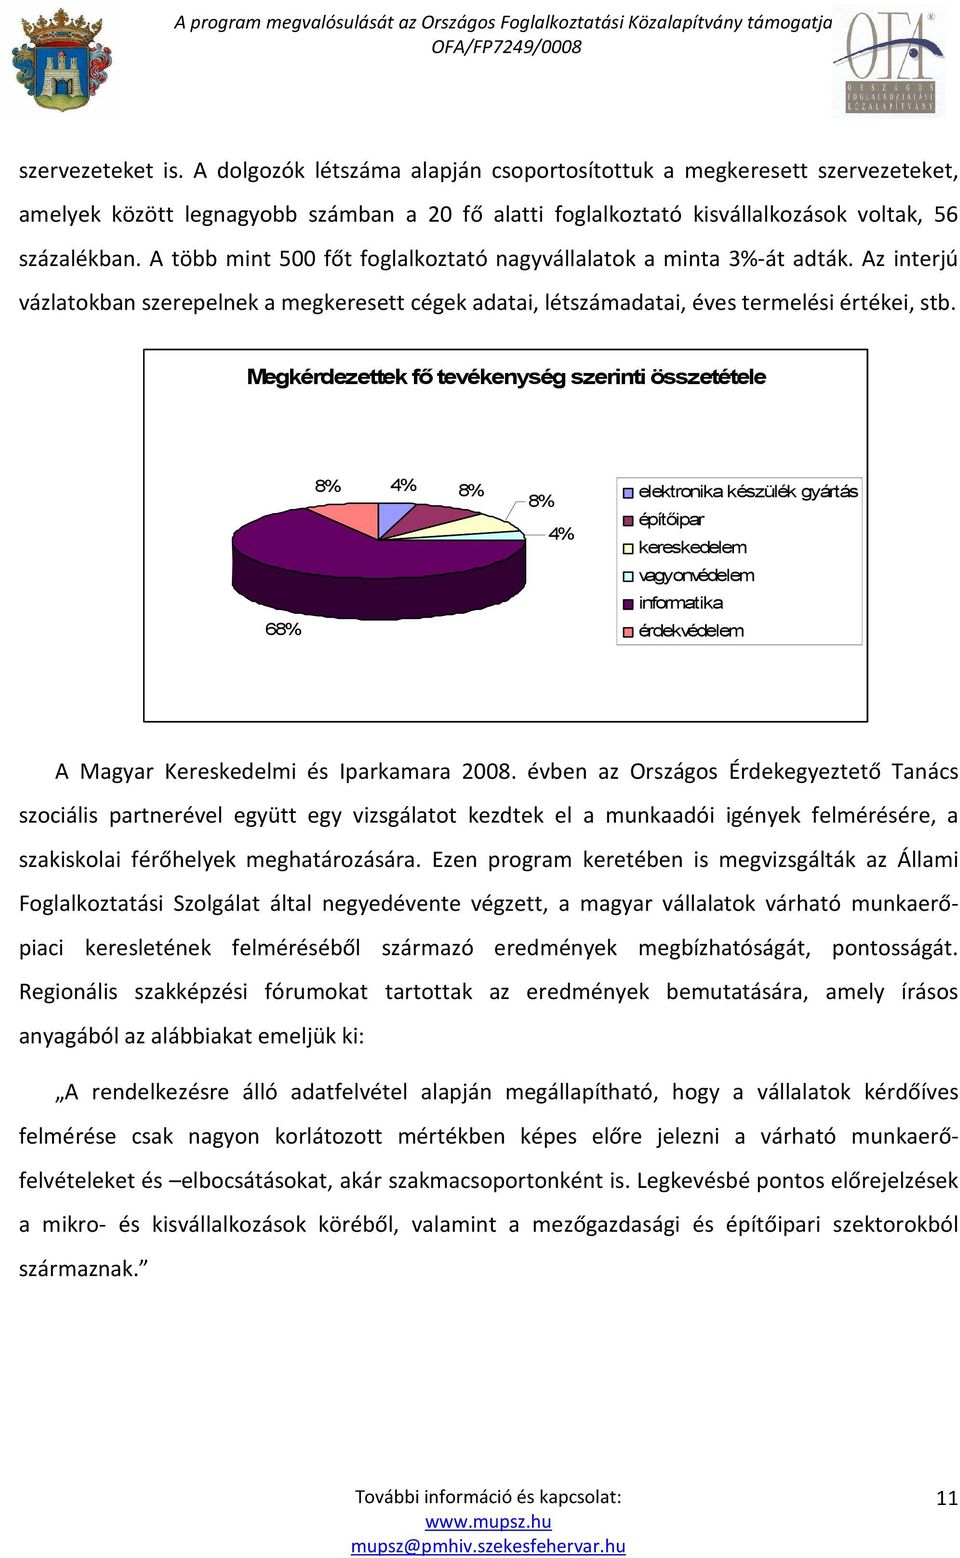 Megkérdezettek fı tevékenység szerinti összetétele 68% 8% 4% 8% 8% 4% elektronika készülék gyártás építıipar kereskedelem vagyonvédelem informatika érdekvédelem A Magyar Kereskedelmi és Iparkamara